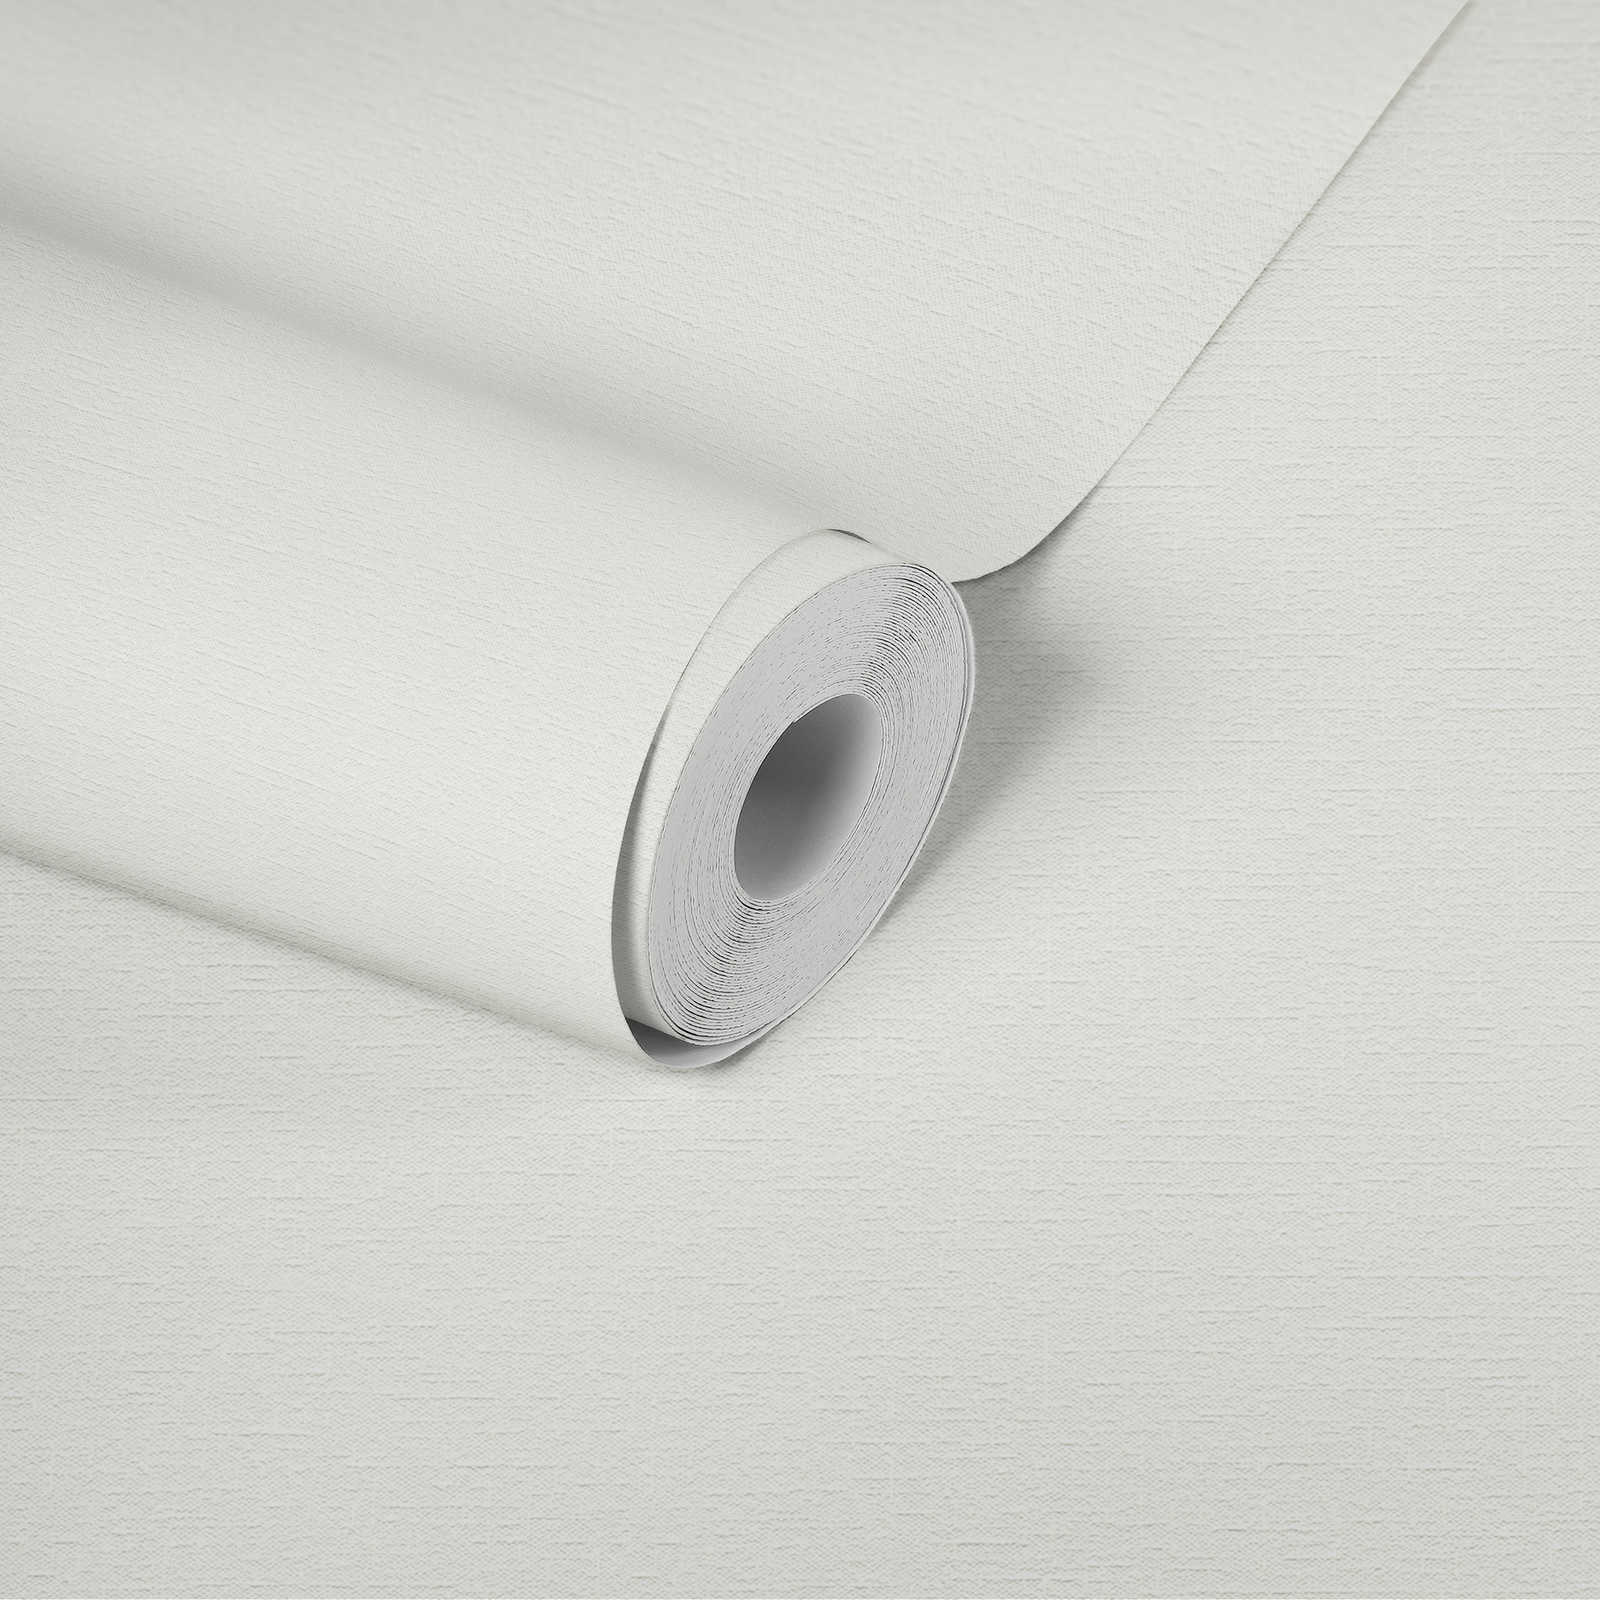             White non-woven wallpaper plain with textile texture
        